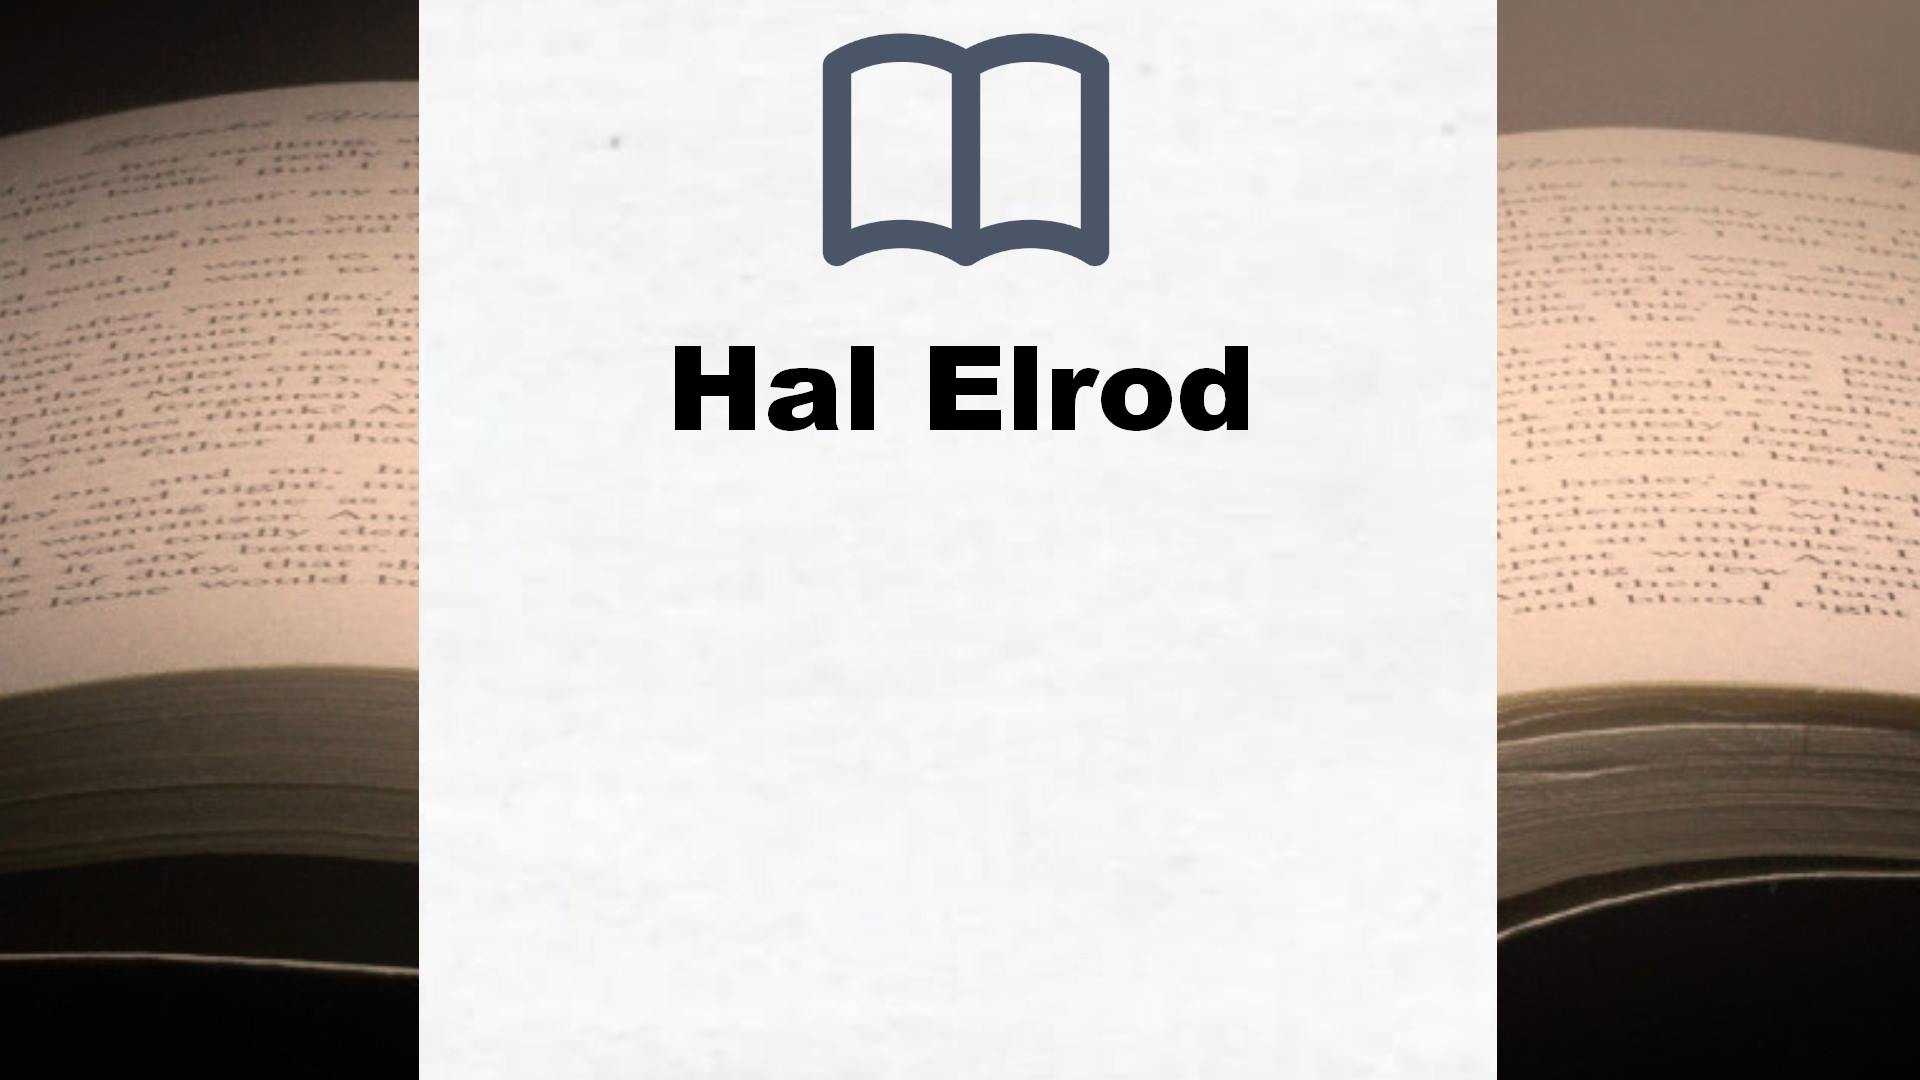 Libros Hal Elrod